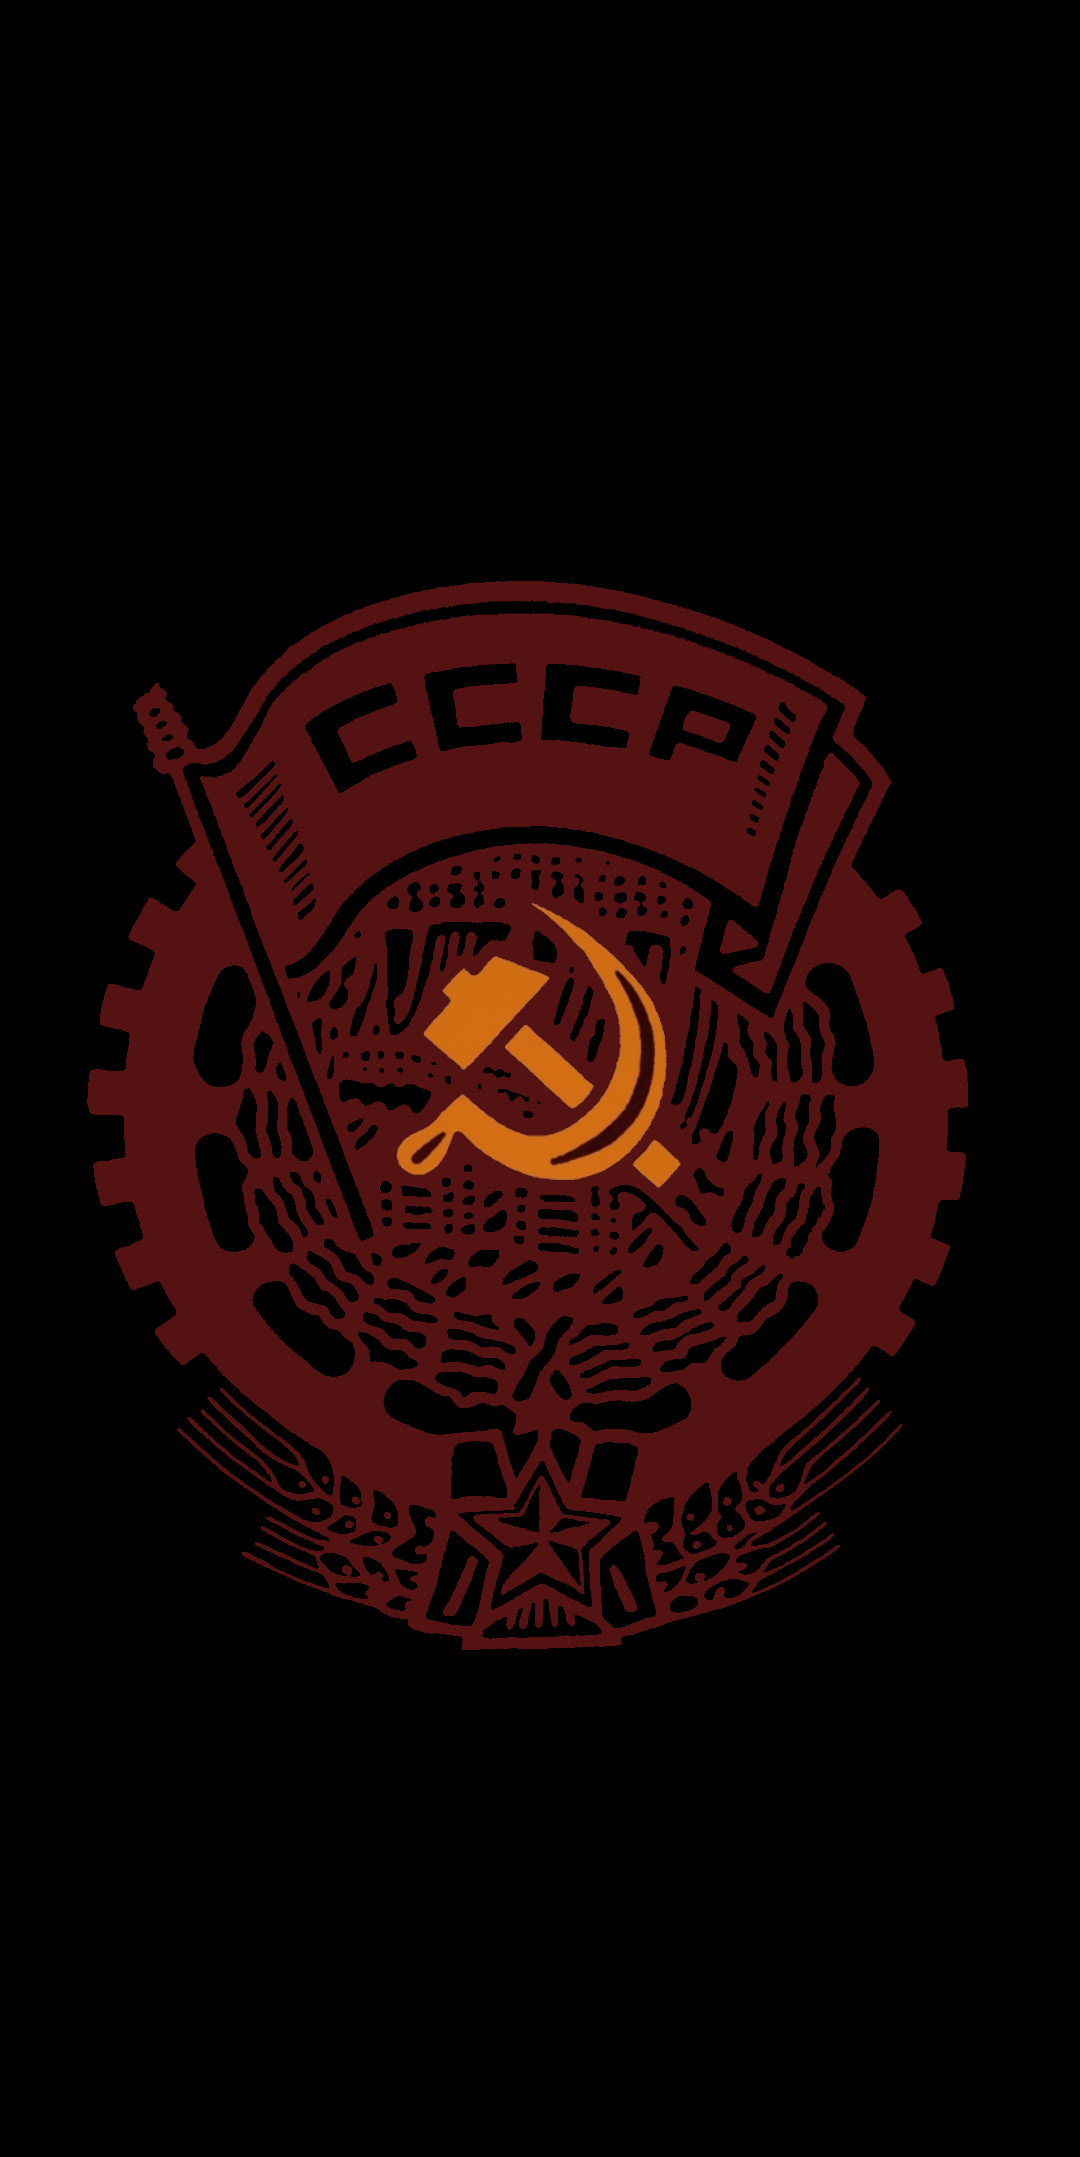 Communist Wallpaper Phone - 1080x2157 Wallpaper 